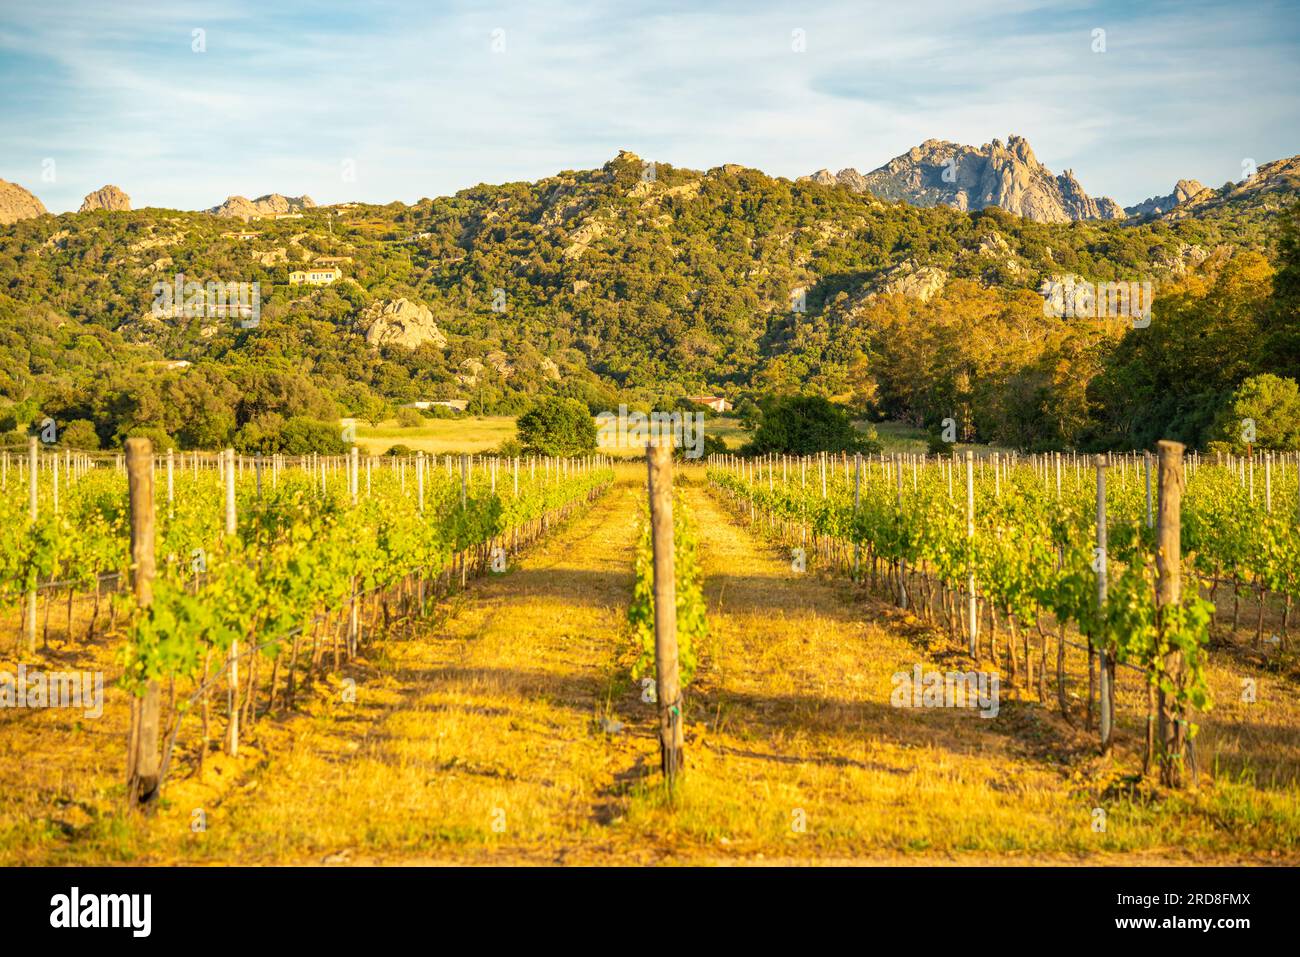 Vue de vignoble et fond montagneux près d'Arzachena, Sardaigne, Italie, Méditerranée, Europe Banque D'Images